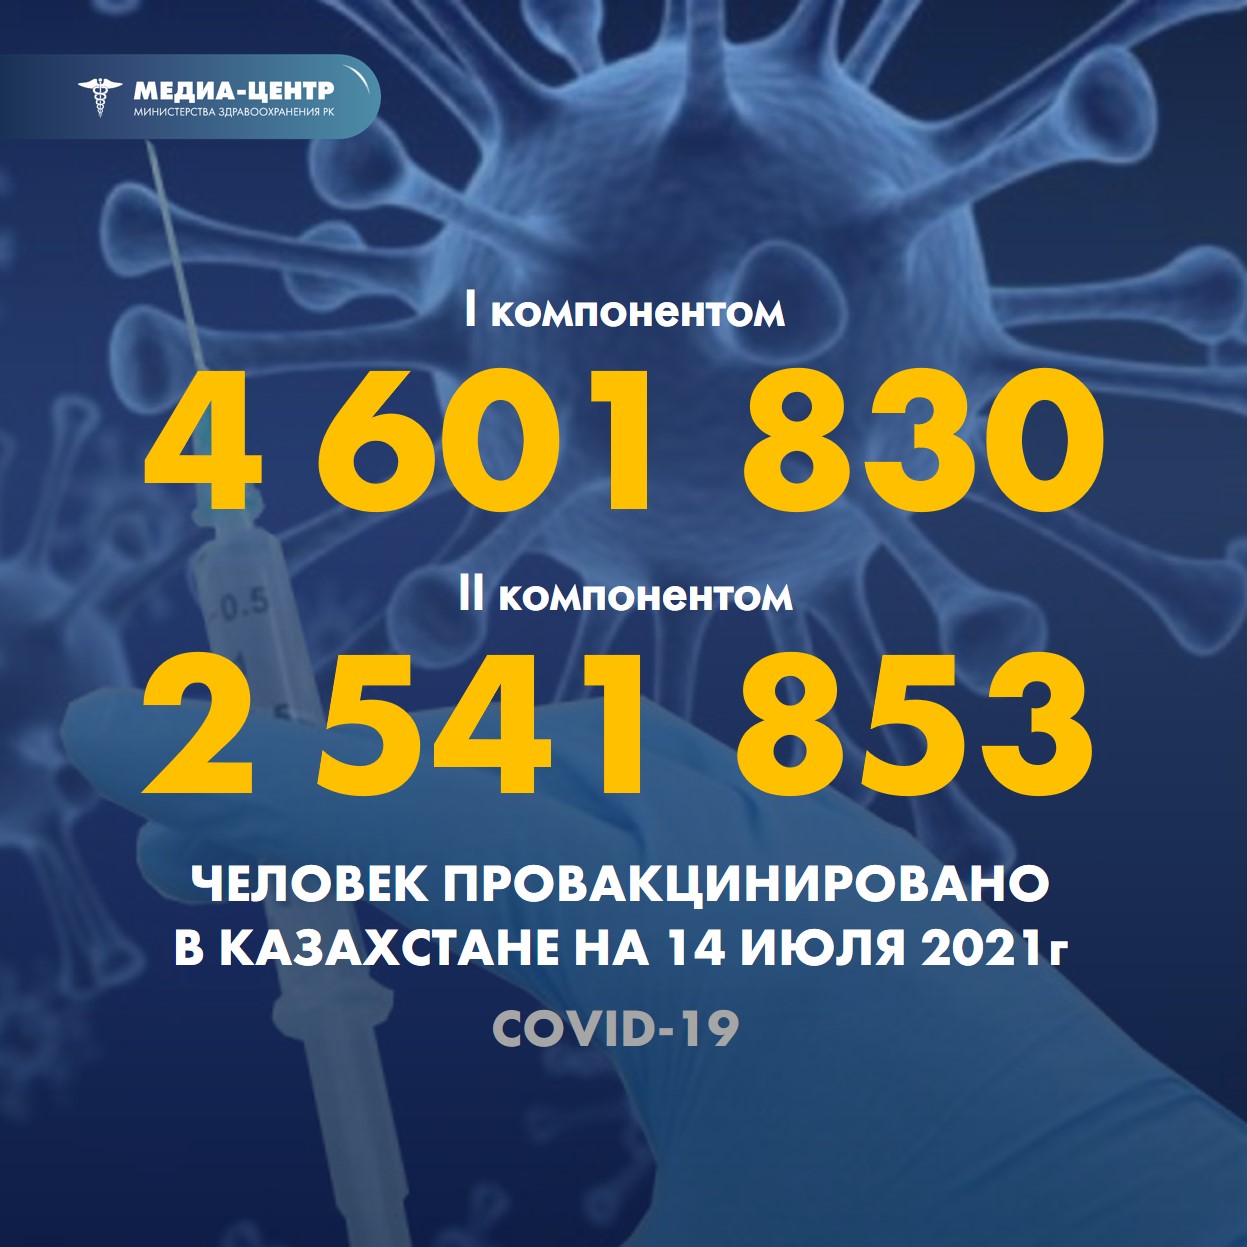 Информация о проведении вакцинации населения против КВИ на 14.07.2021 г. в разрезе регионов